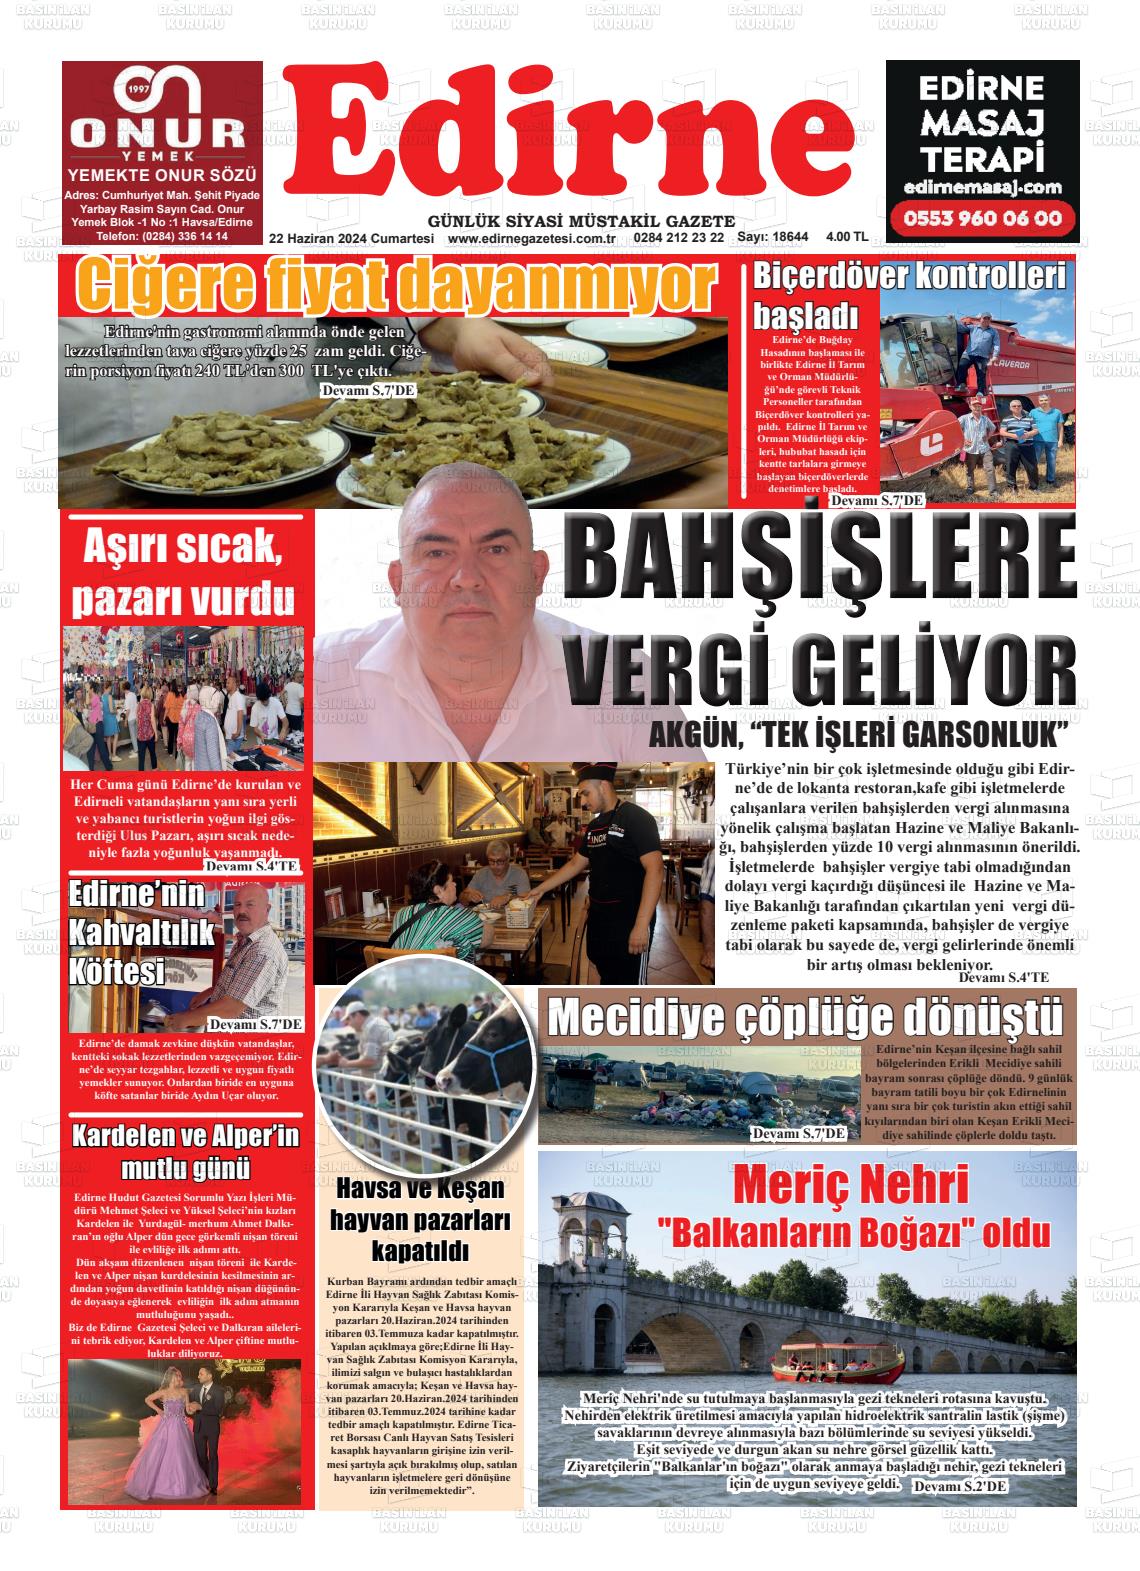 EDİRNE Gazetesi